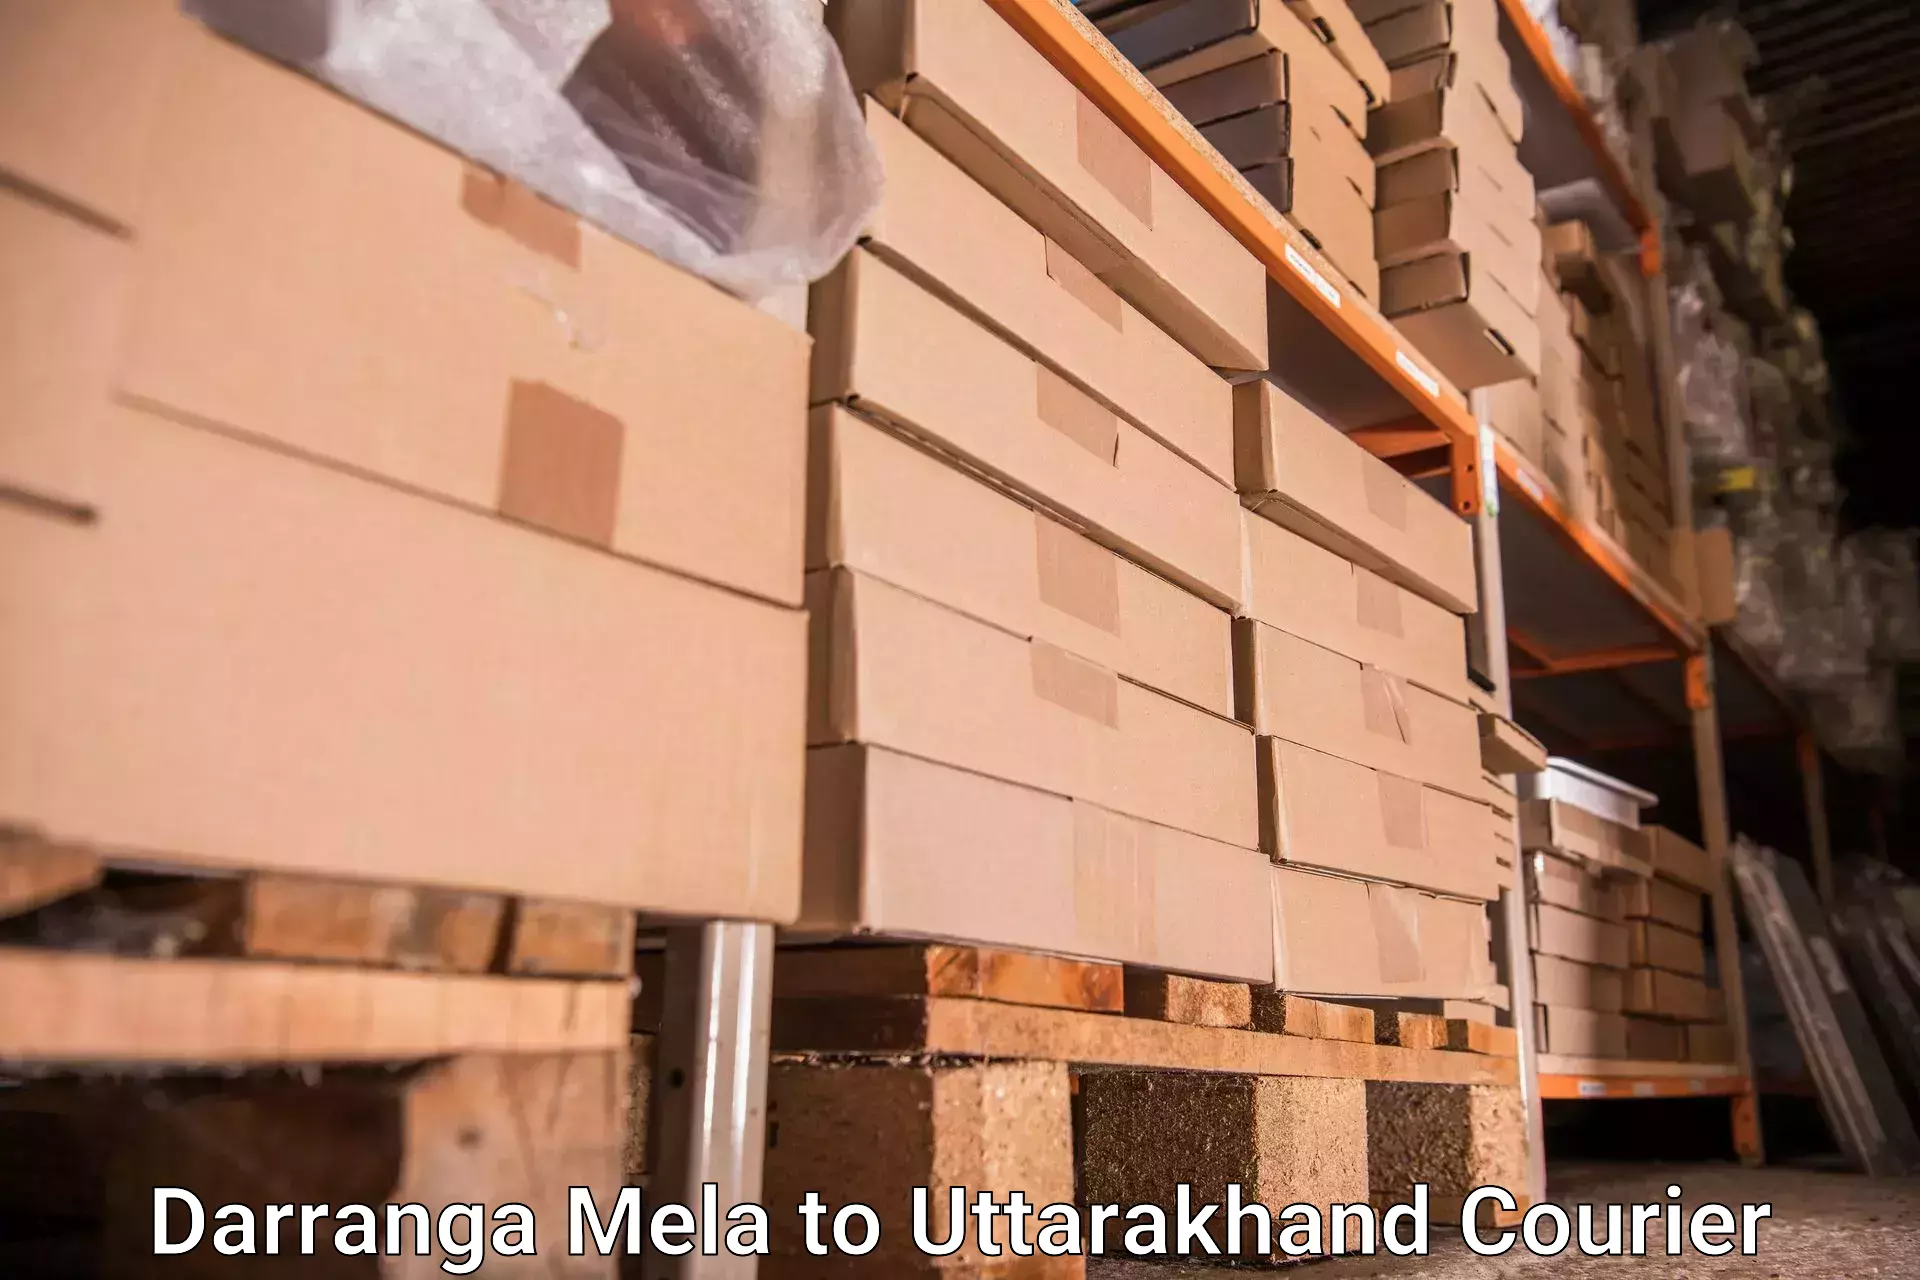 Electronic items luggage shipping in Darranga Mela to Uttarakhand